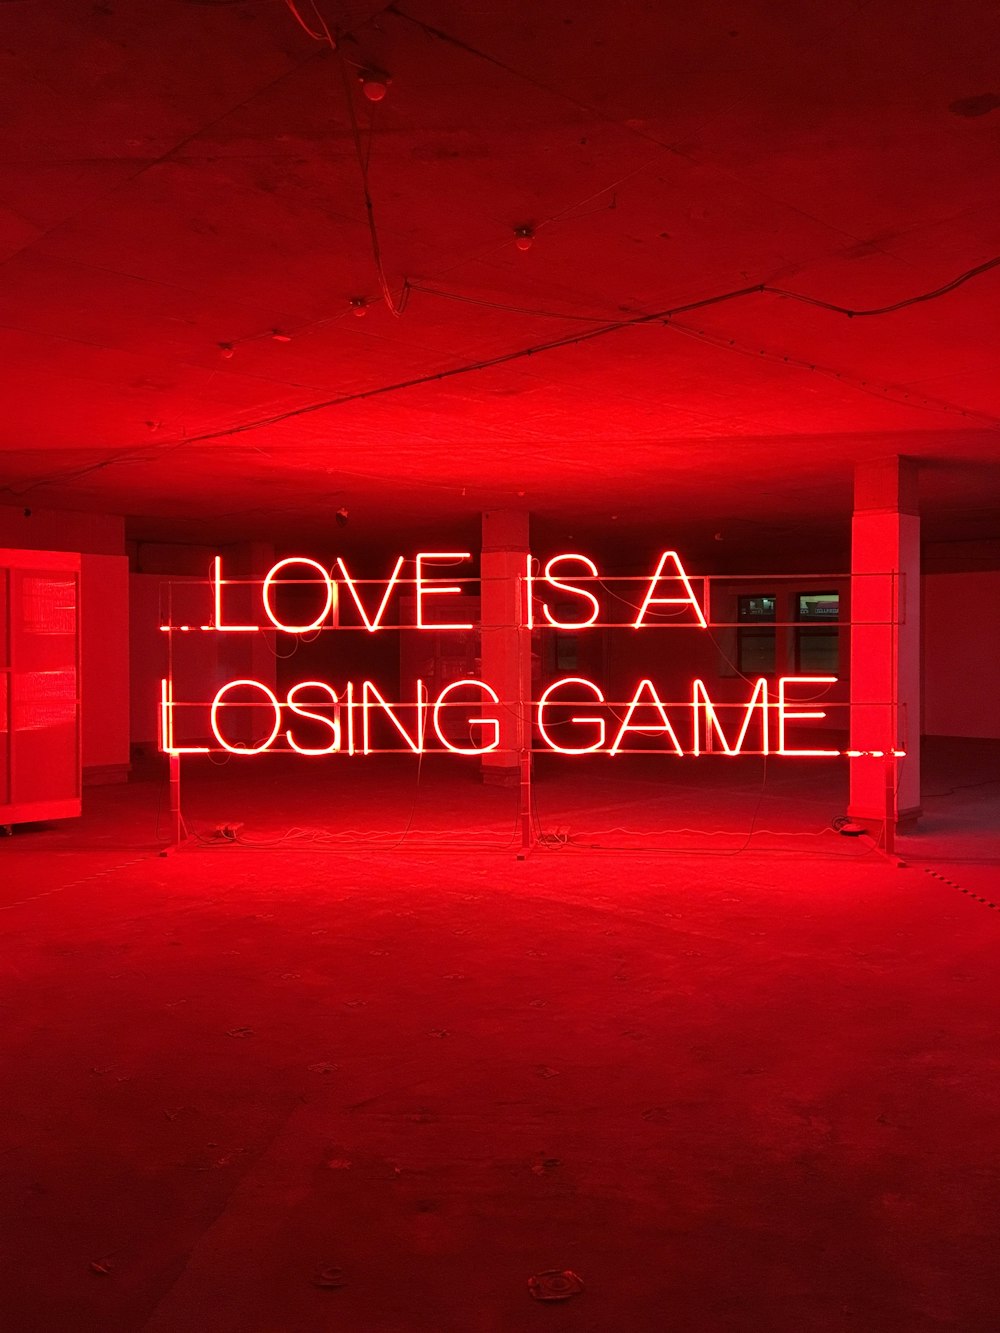 Liebe ist ein verlorenes Spiel text